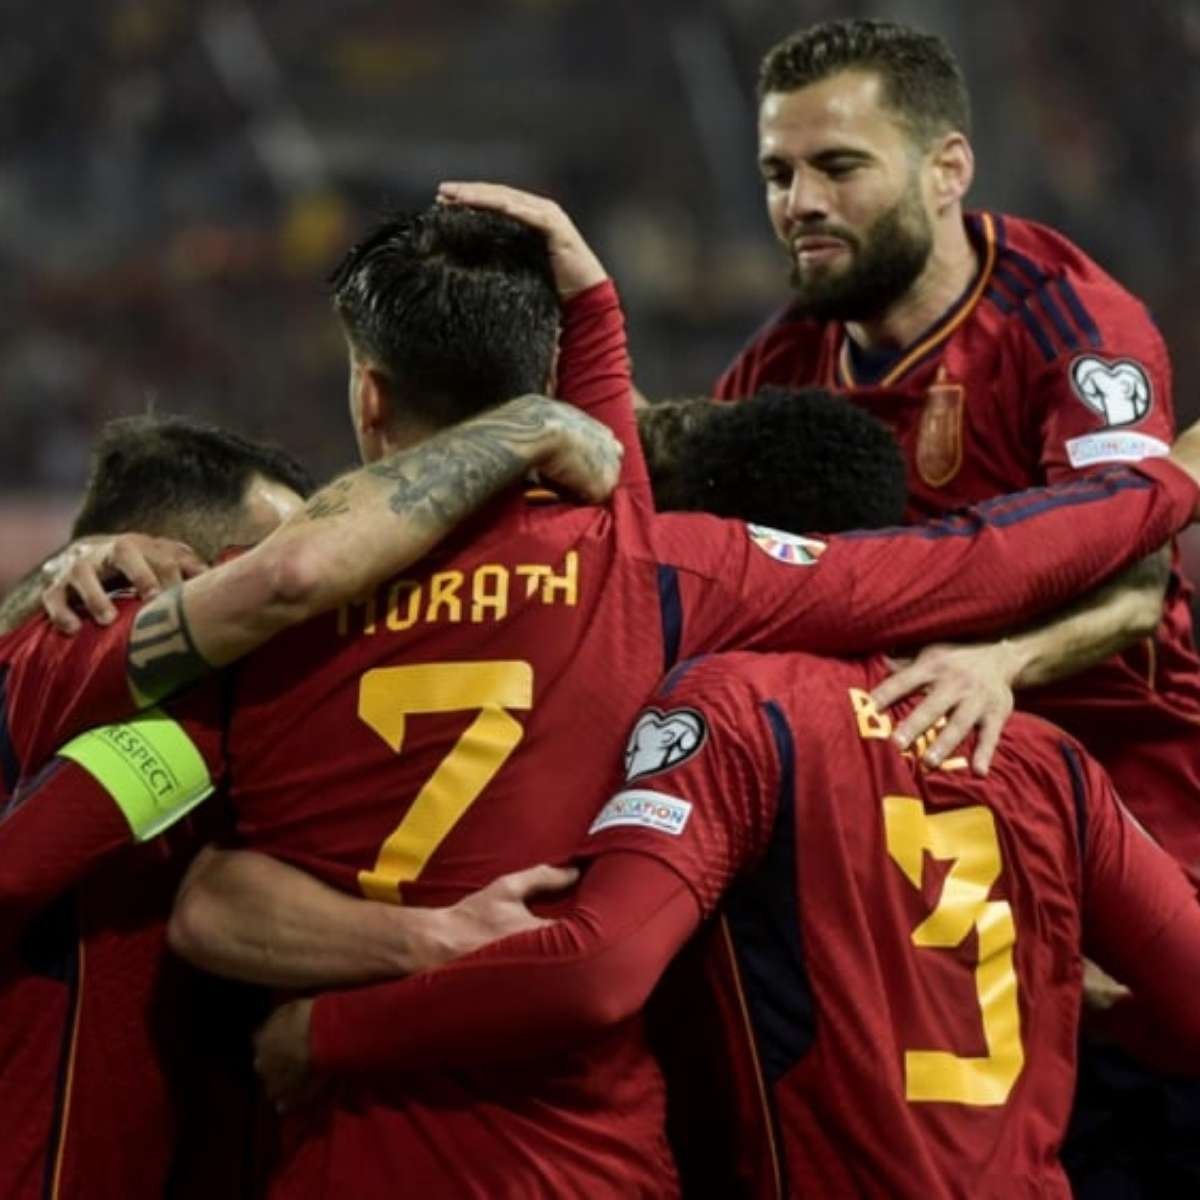 Espanha decide na prorrogação, bate Croácia por 5 a 3 e avança às quartas  da Eurocopa